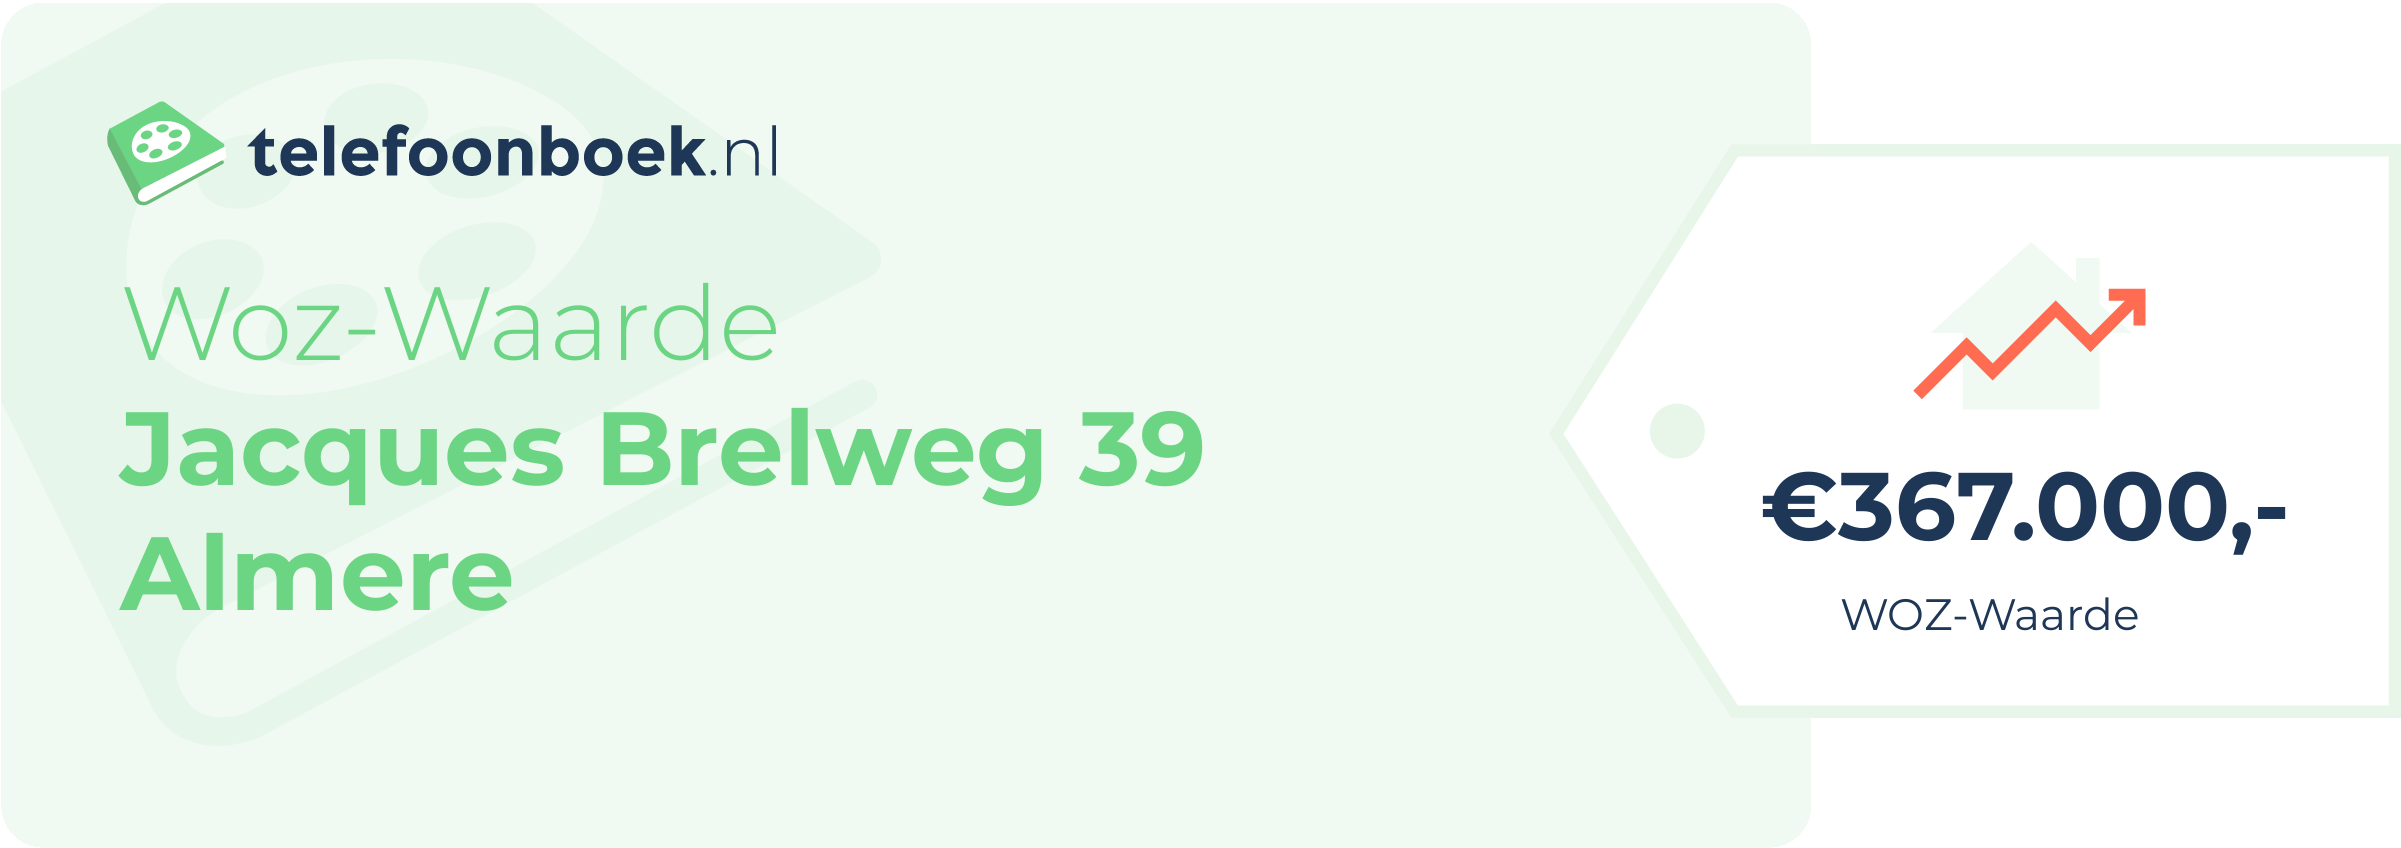 WOZ-waarde Jacques Brelweg 39 Almere